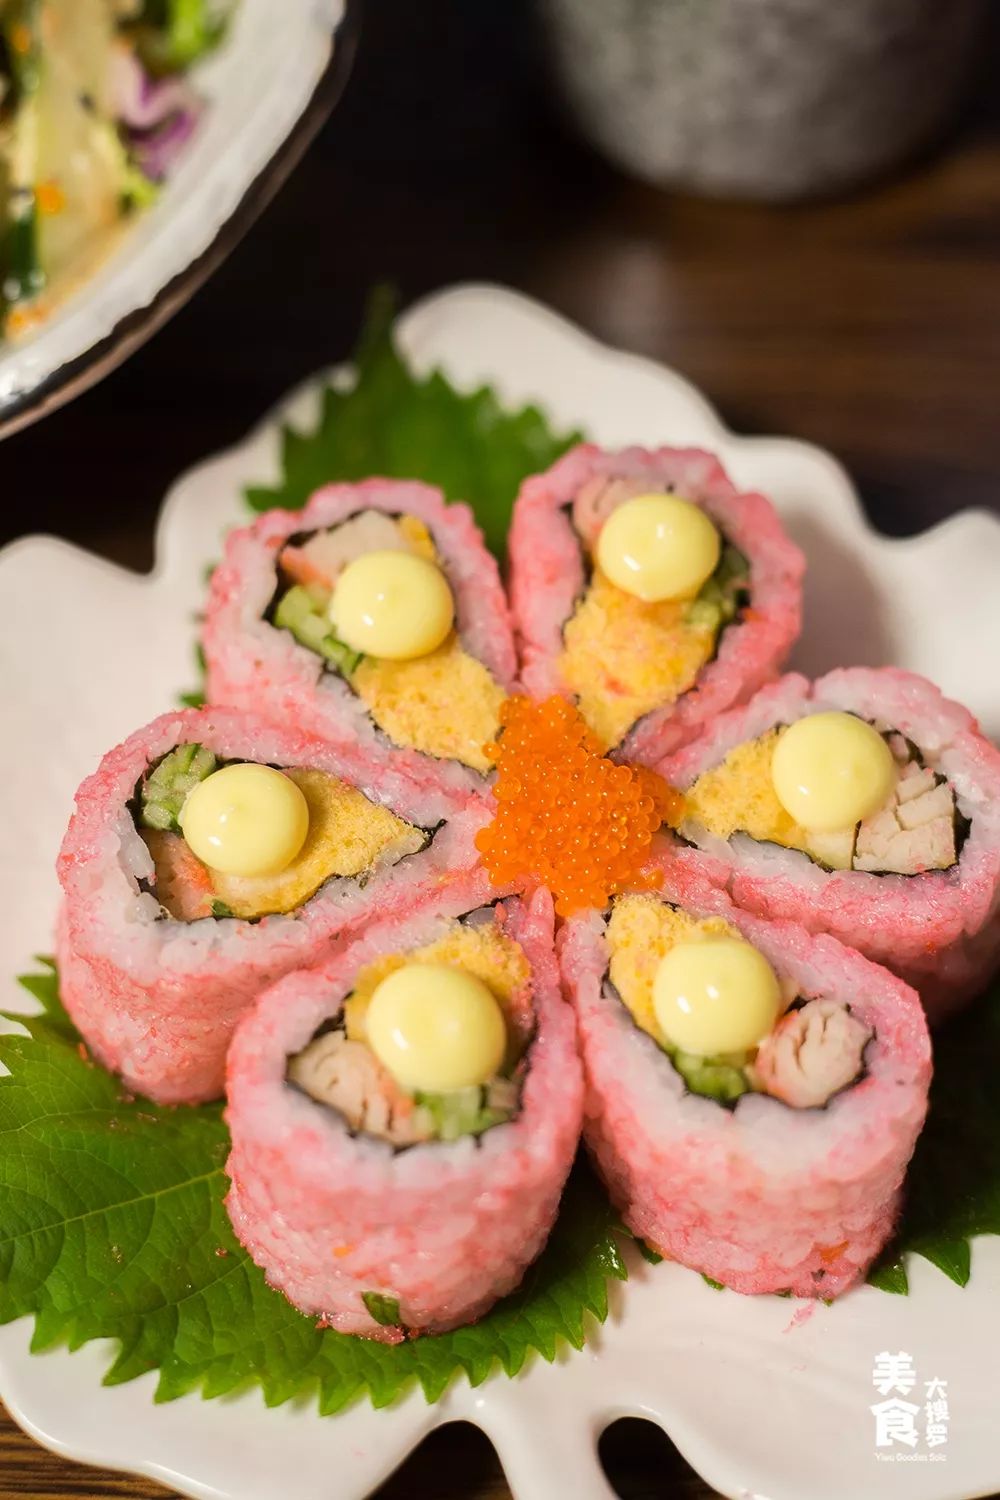 馅料六枚精致寿司染上诱人粉色团成花型浪漫樱花卷 鱼籽沙拉午餐menu